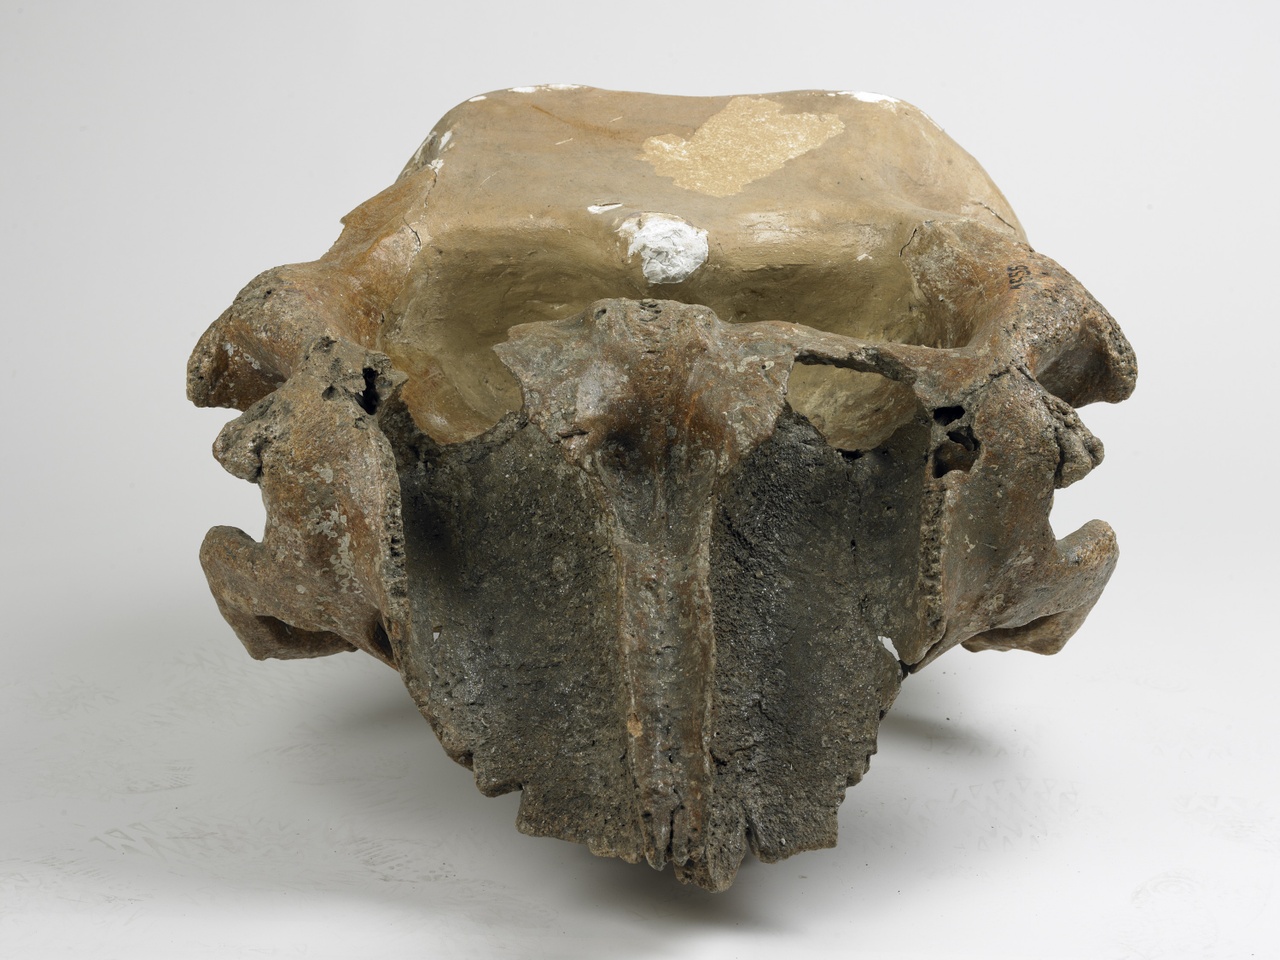 Schedelbasis van een wolharige mammoet - cranium